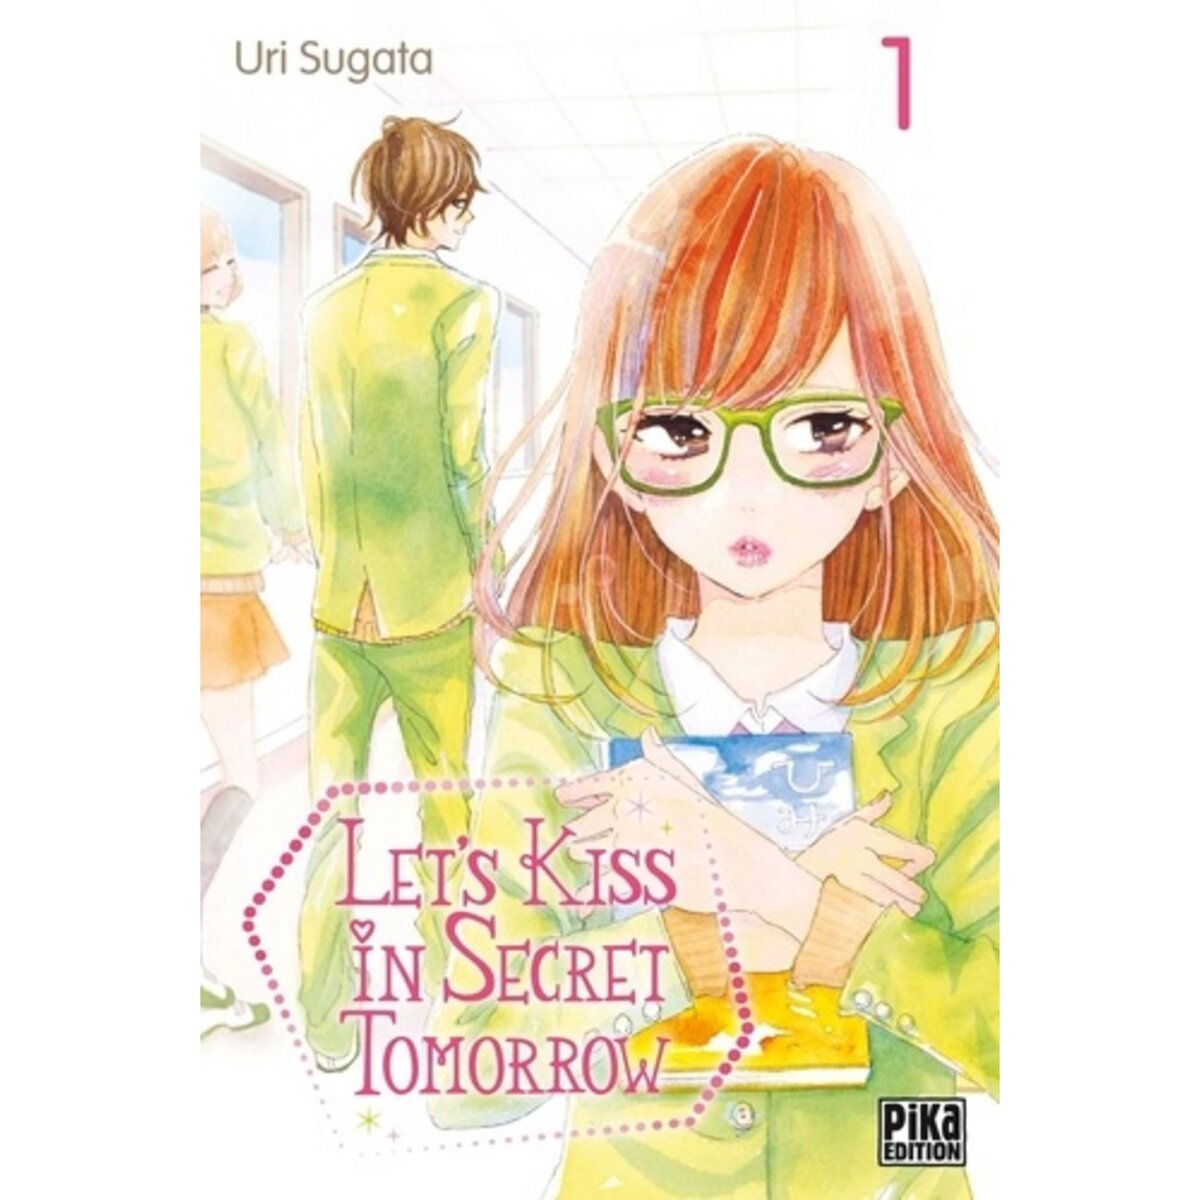  LET'S KISS IN SECRET TOMORROW TOME 1 , Sugata Uri